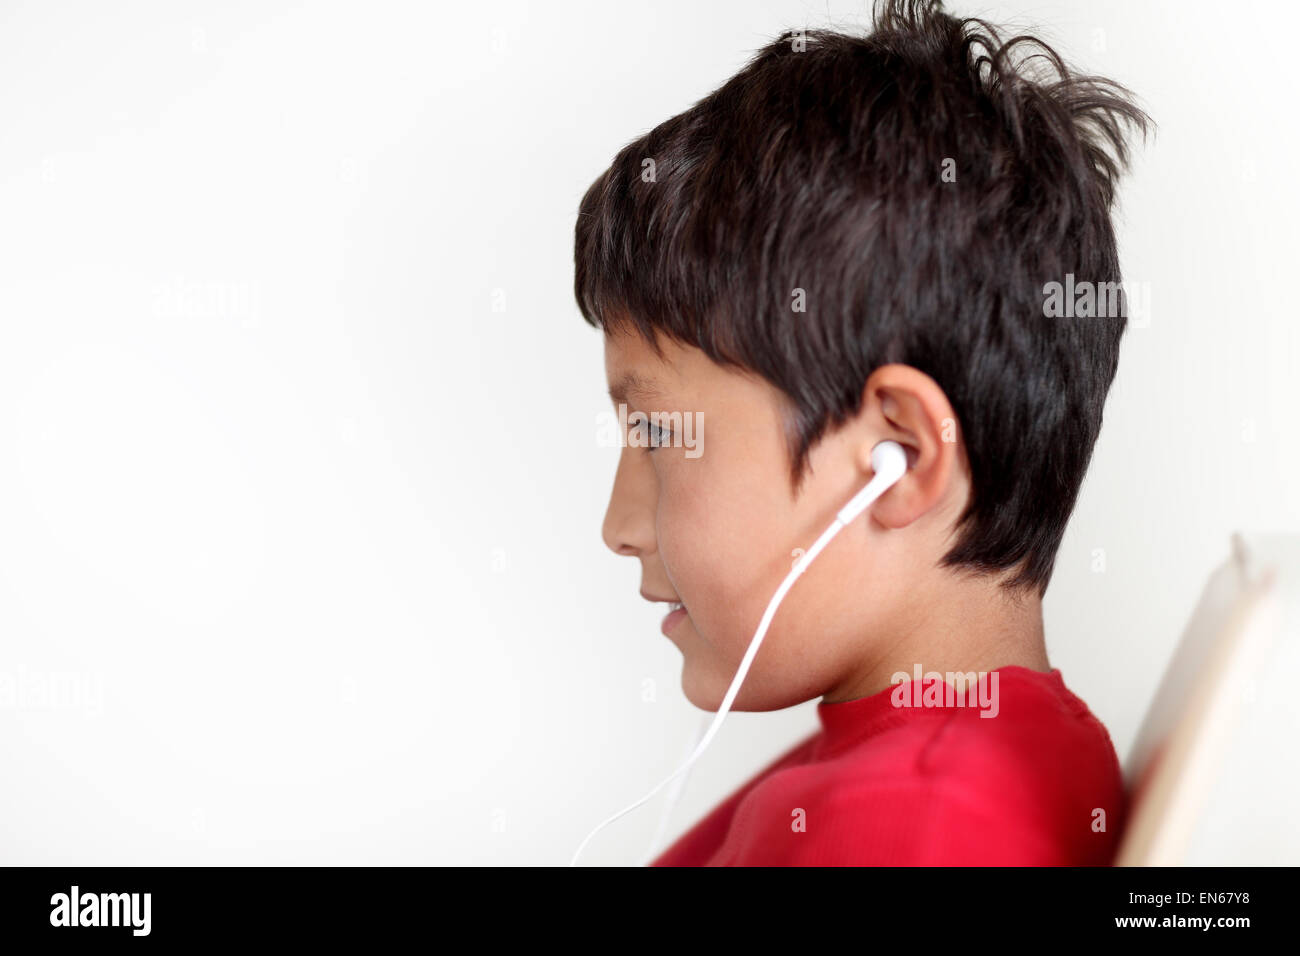 Profil de jeune garçon avec écouteurs sur fond clair Banque D'Images